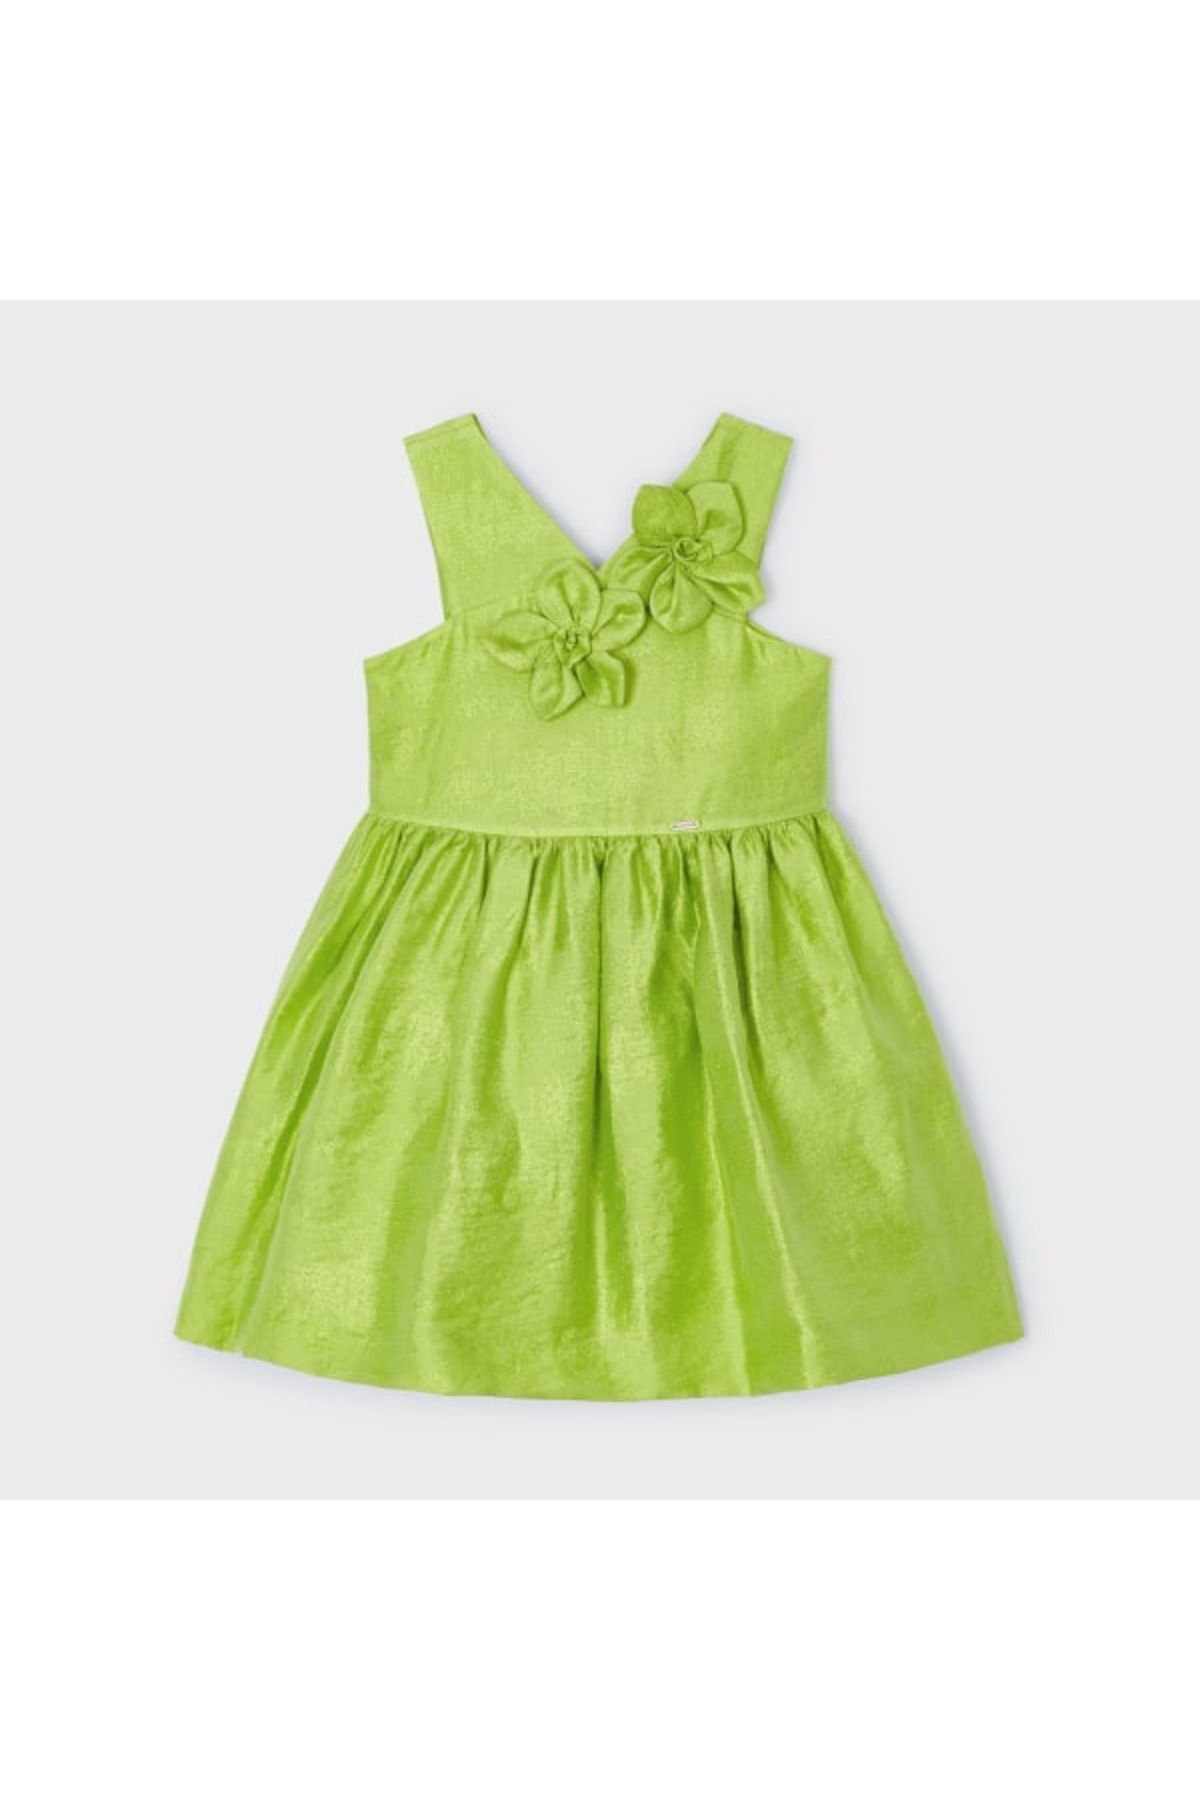 Mayoral Kız Çocuk Şık Tafta  Elbise Fıstık Yeşili L24Y3916